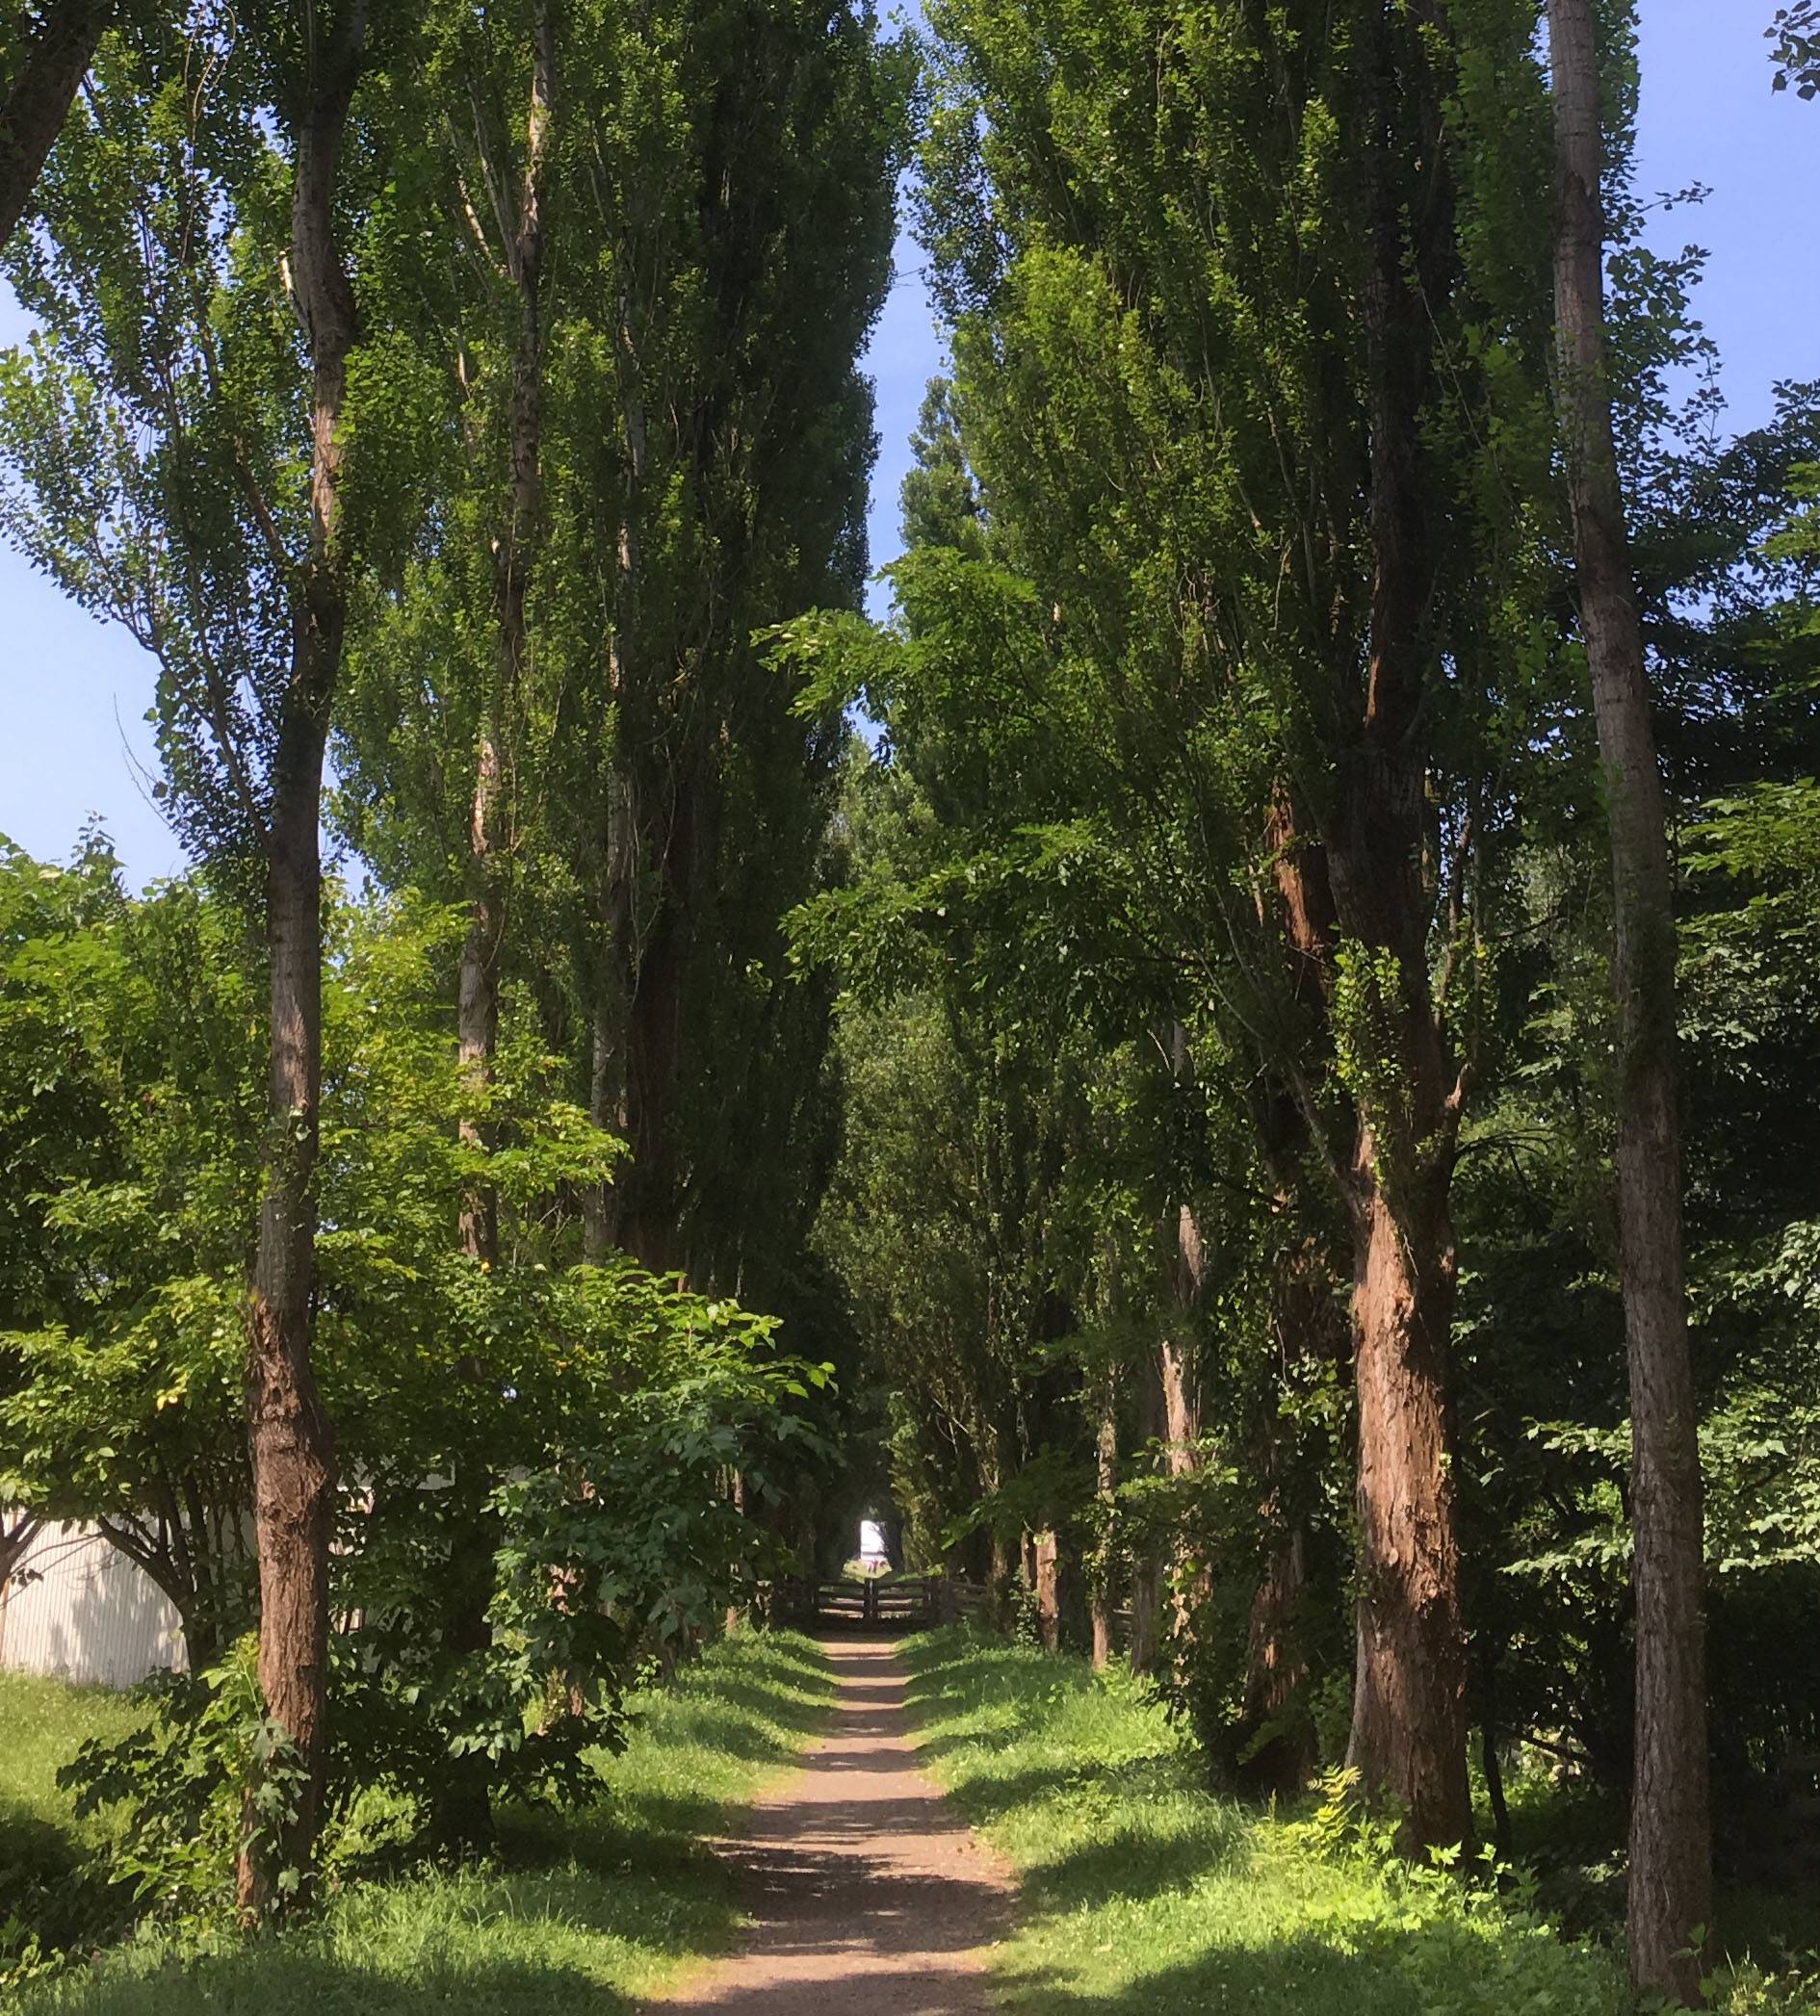 北海道大学ポプラ並木